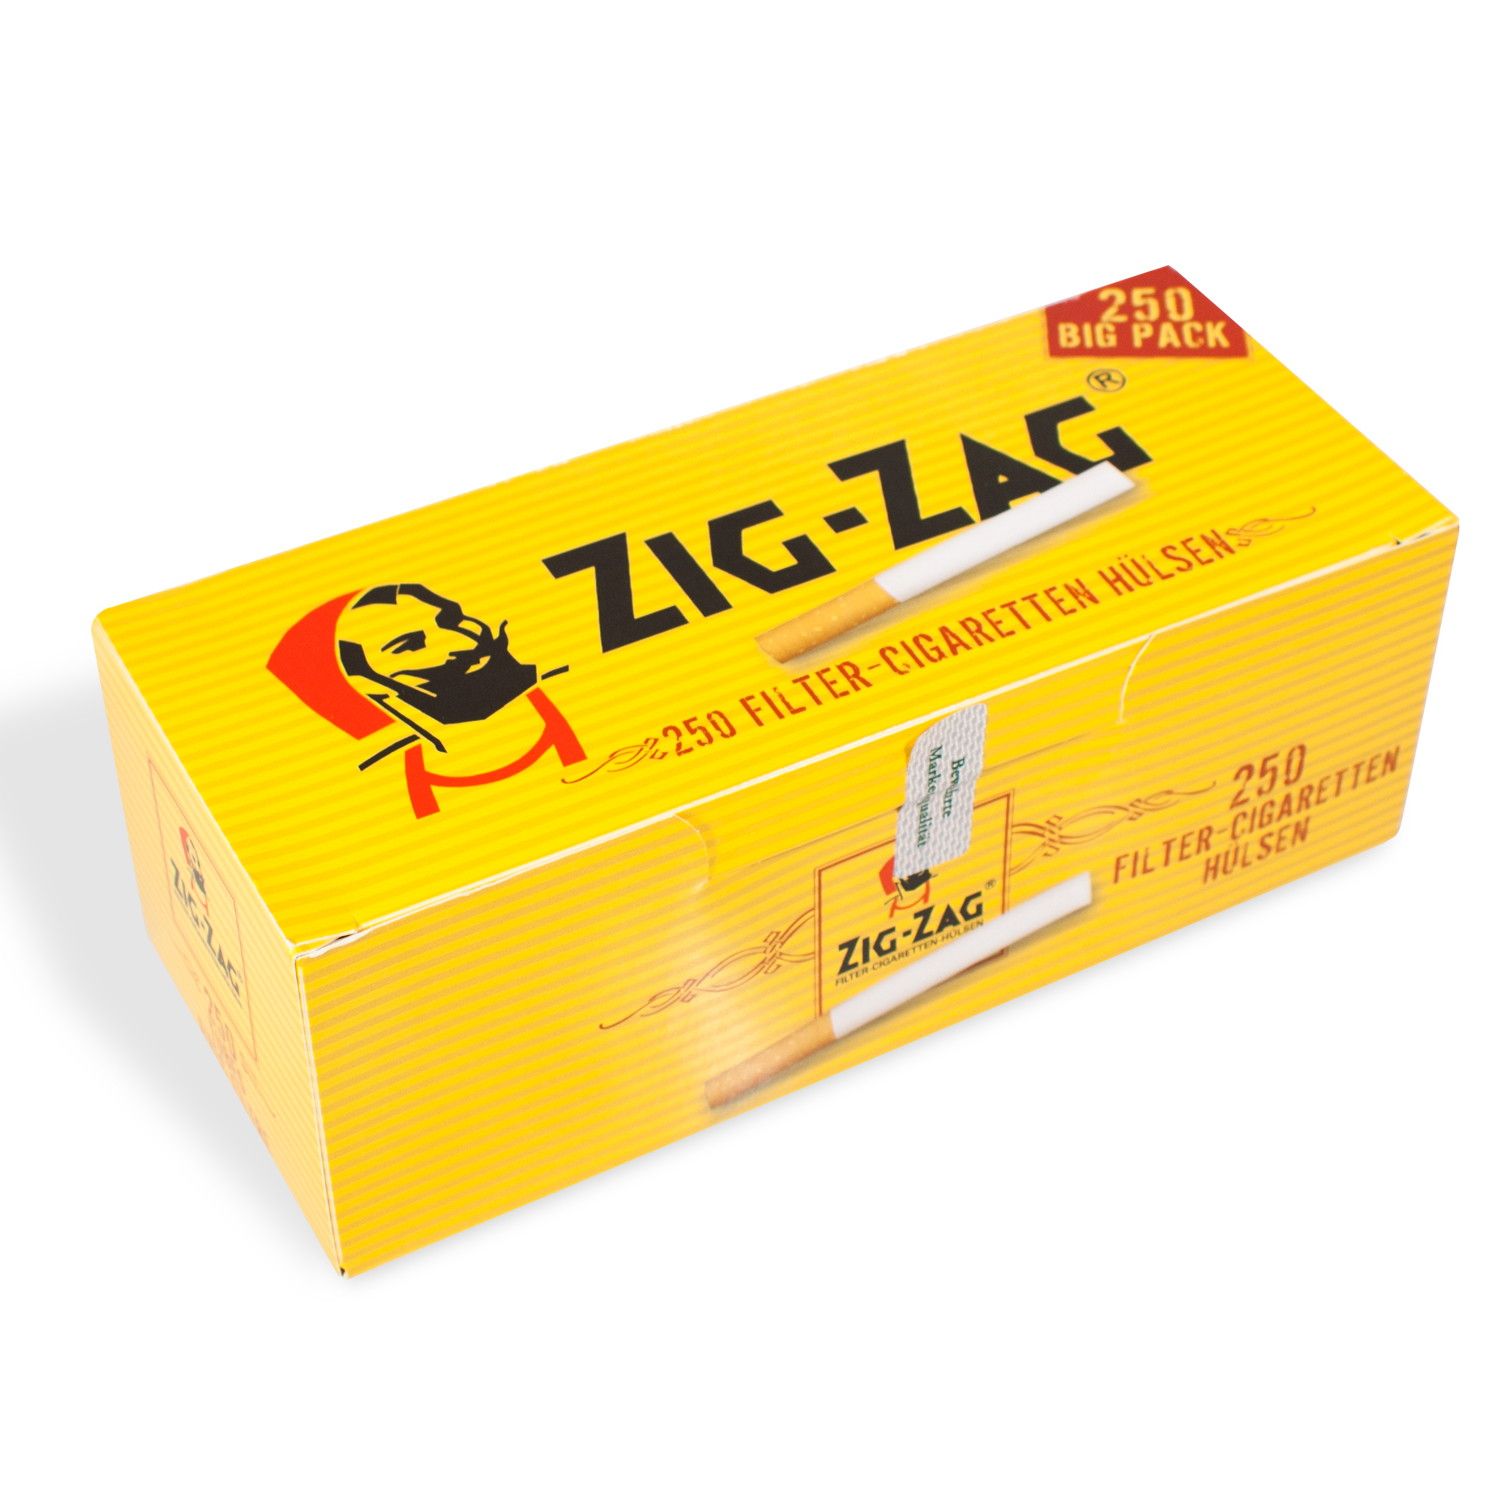 ZIG ZAG Filterhülsen - 1.000 Stück in 4 praktischen Packungen à 250 Stück 